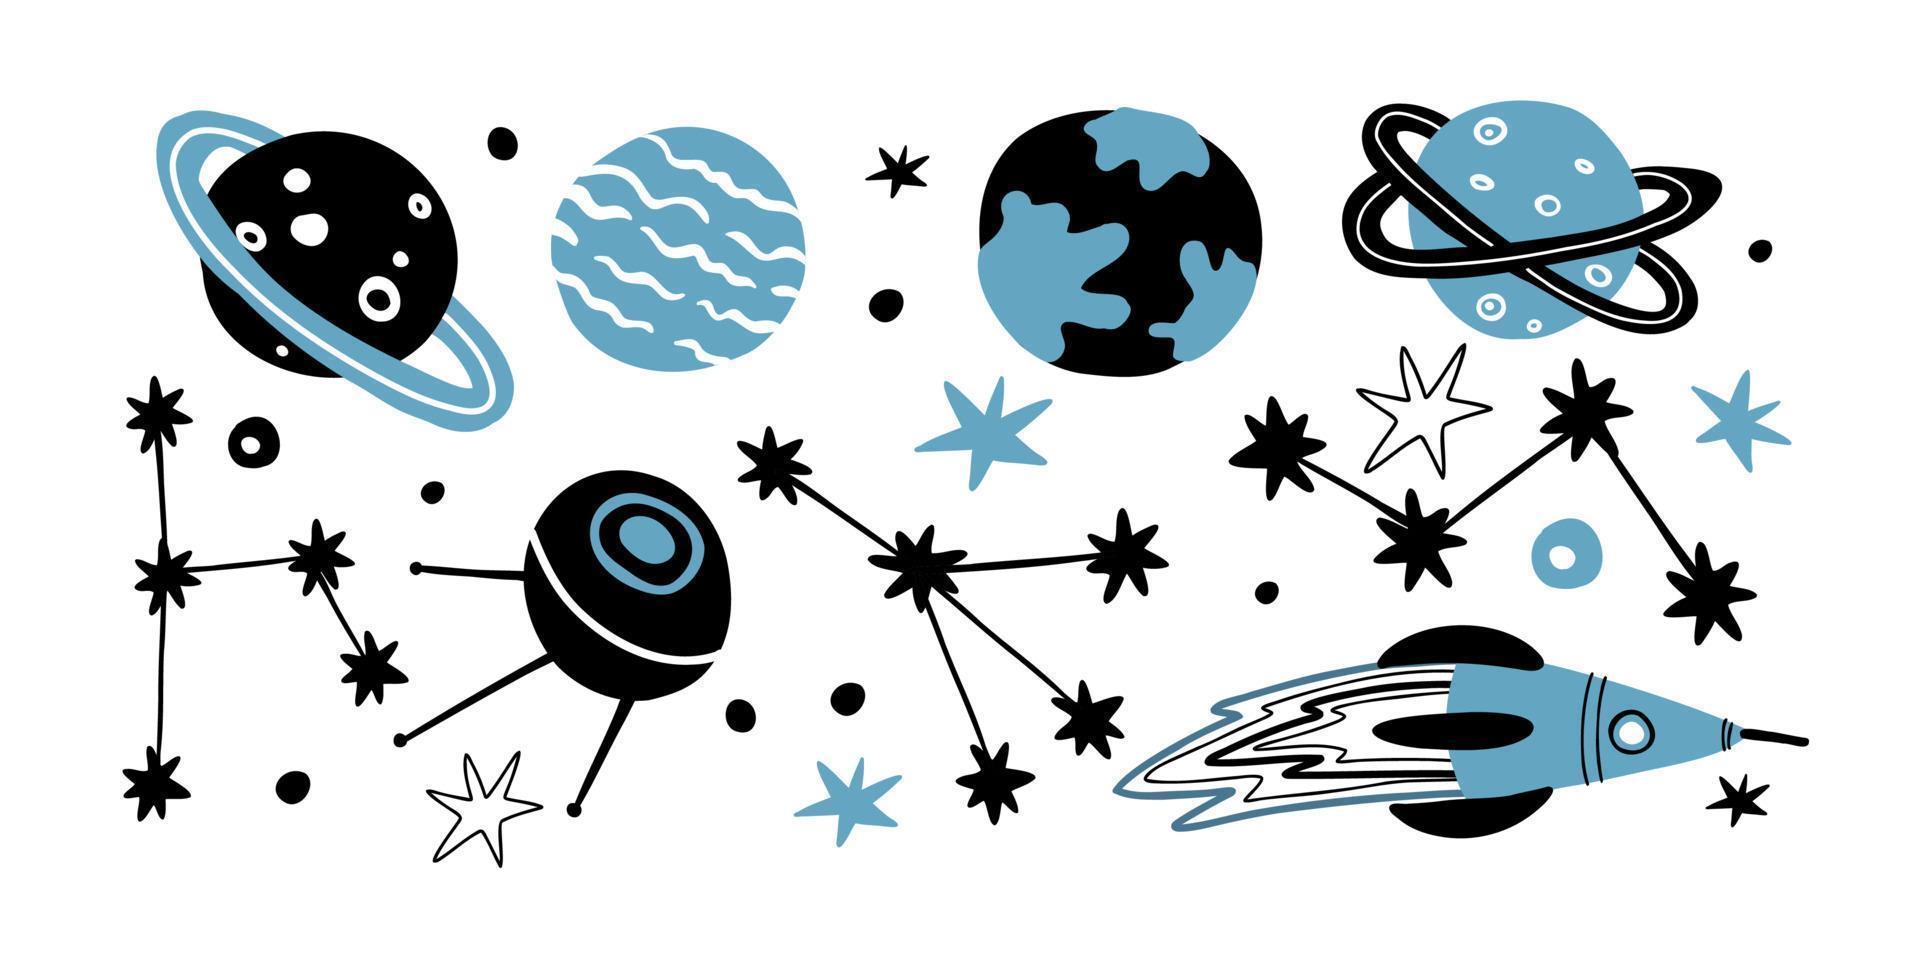 platte set met sterrenbeelden van verschillende vormen, planeten, sterren, satelliet en raket. vector handgetekende illustratie.